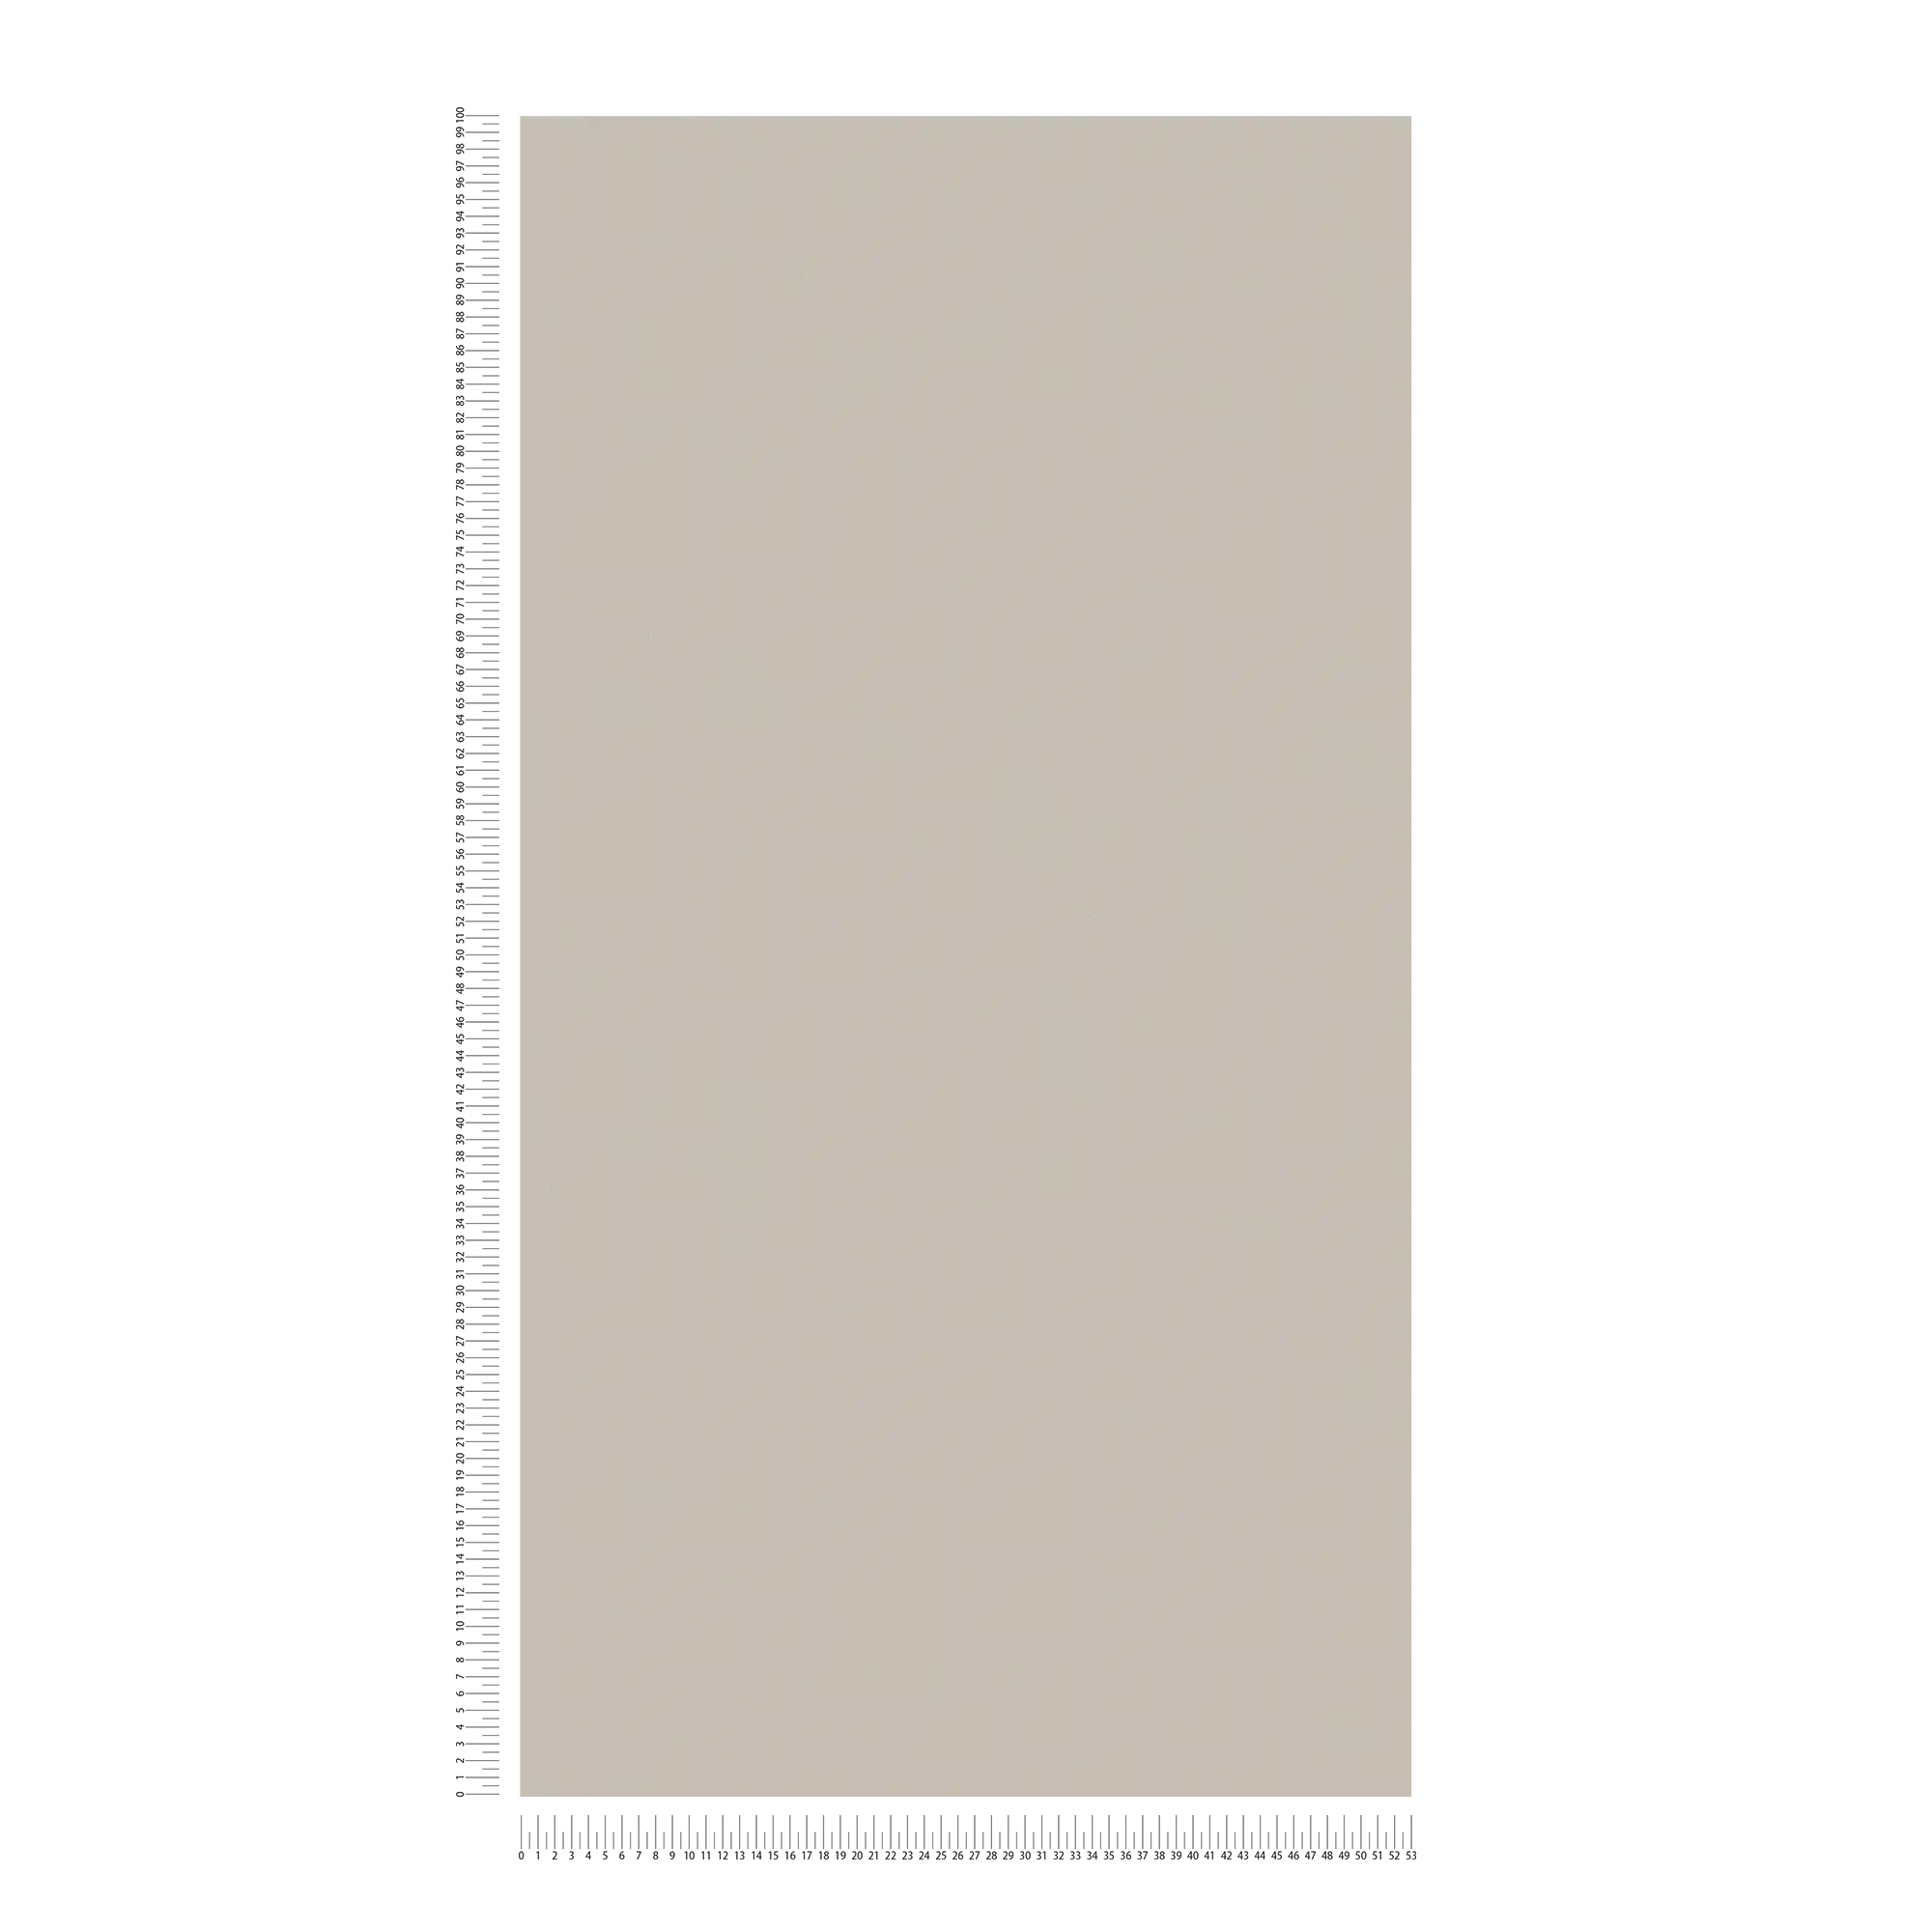             Papier peint uni couleur chaude, texturé - marron, gris
        